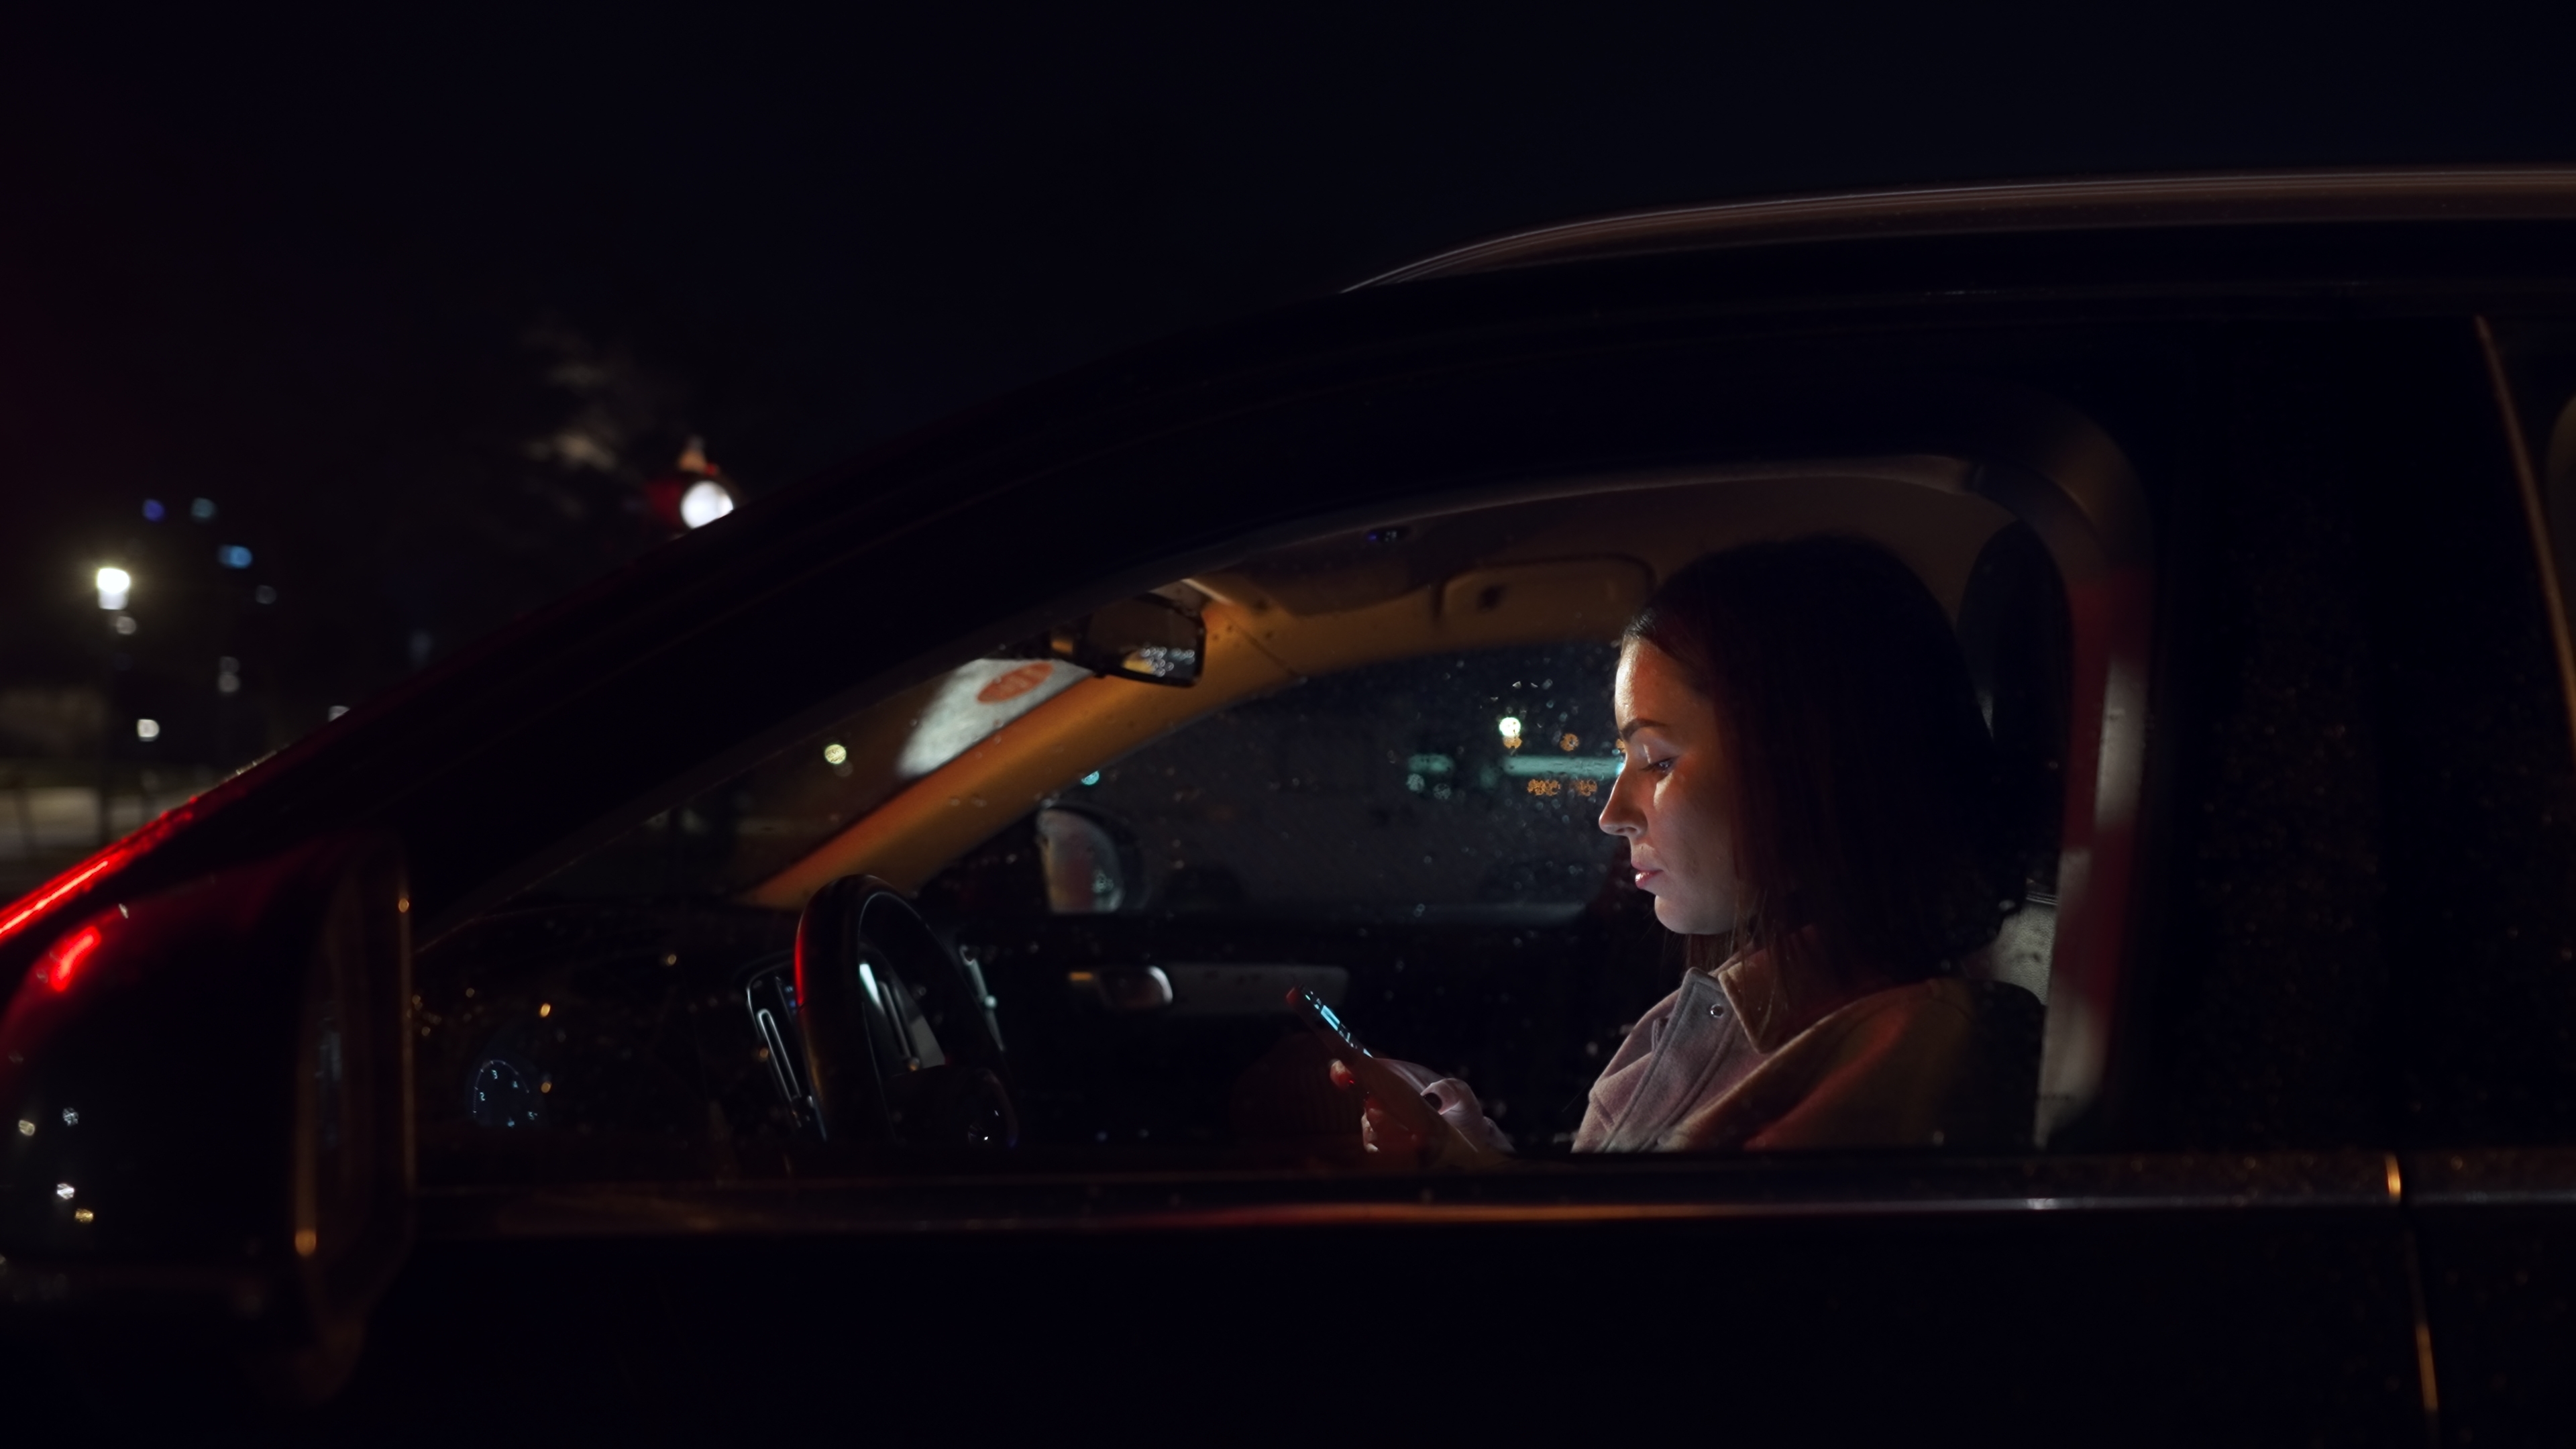 Frau benutzt ihr Smartphone nachts in einem Auto | Quelle: Shutterstock